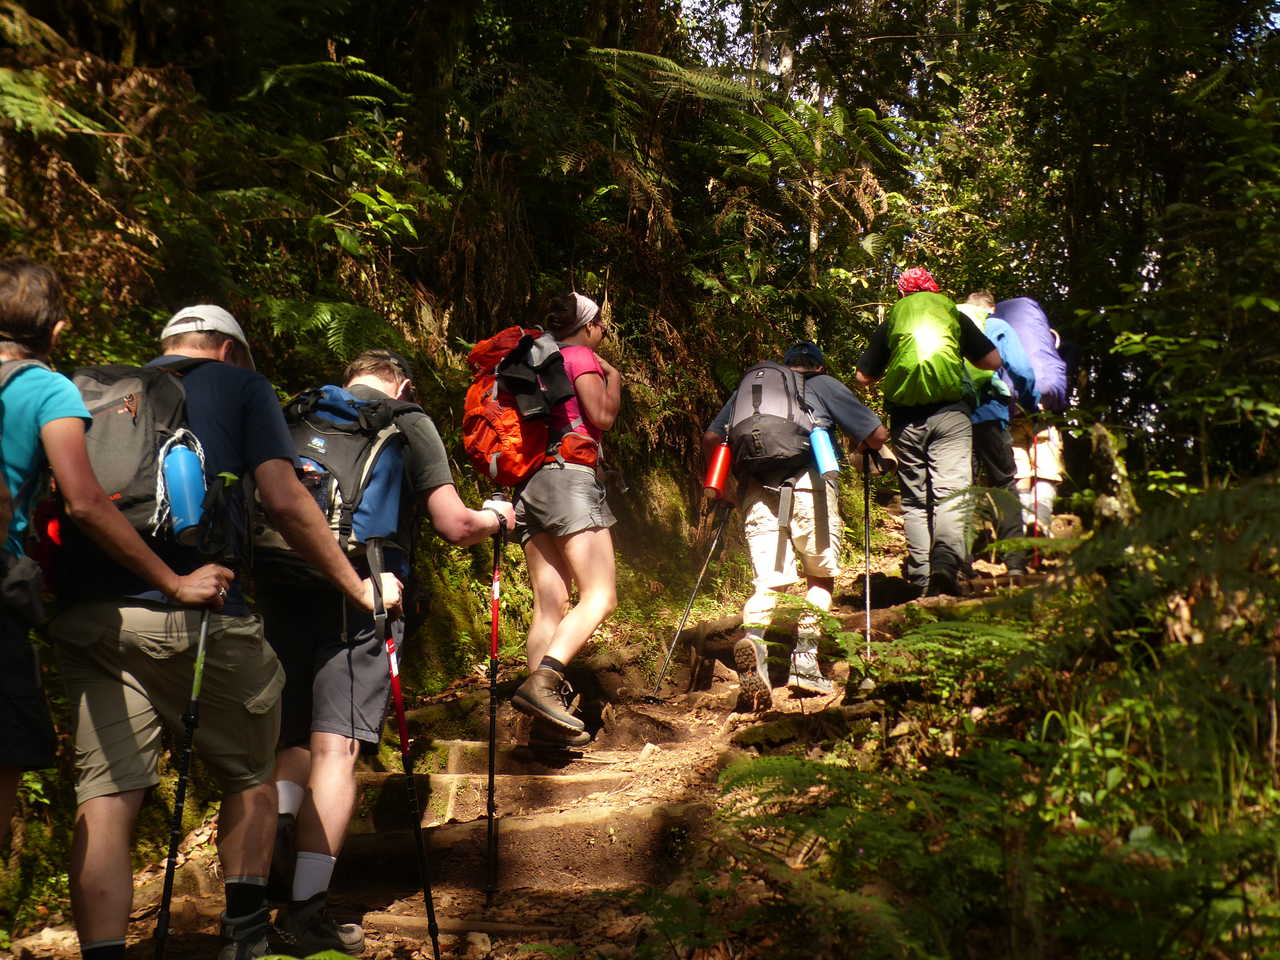 Petit groupe de randonneur dans la jungle vers Machame Camp pour l'ascension du Kilimandjaro en Tanzanie